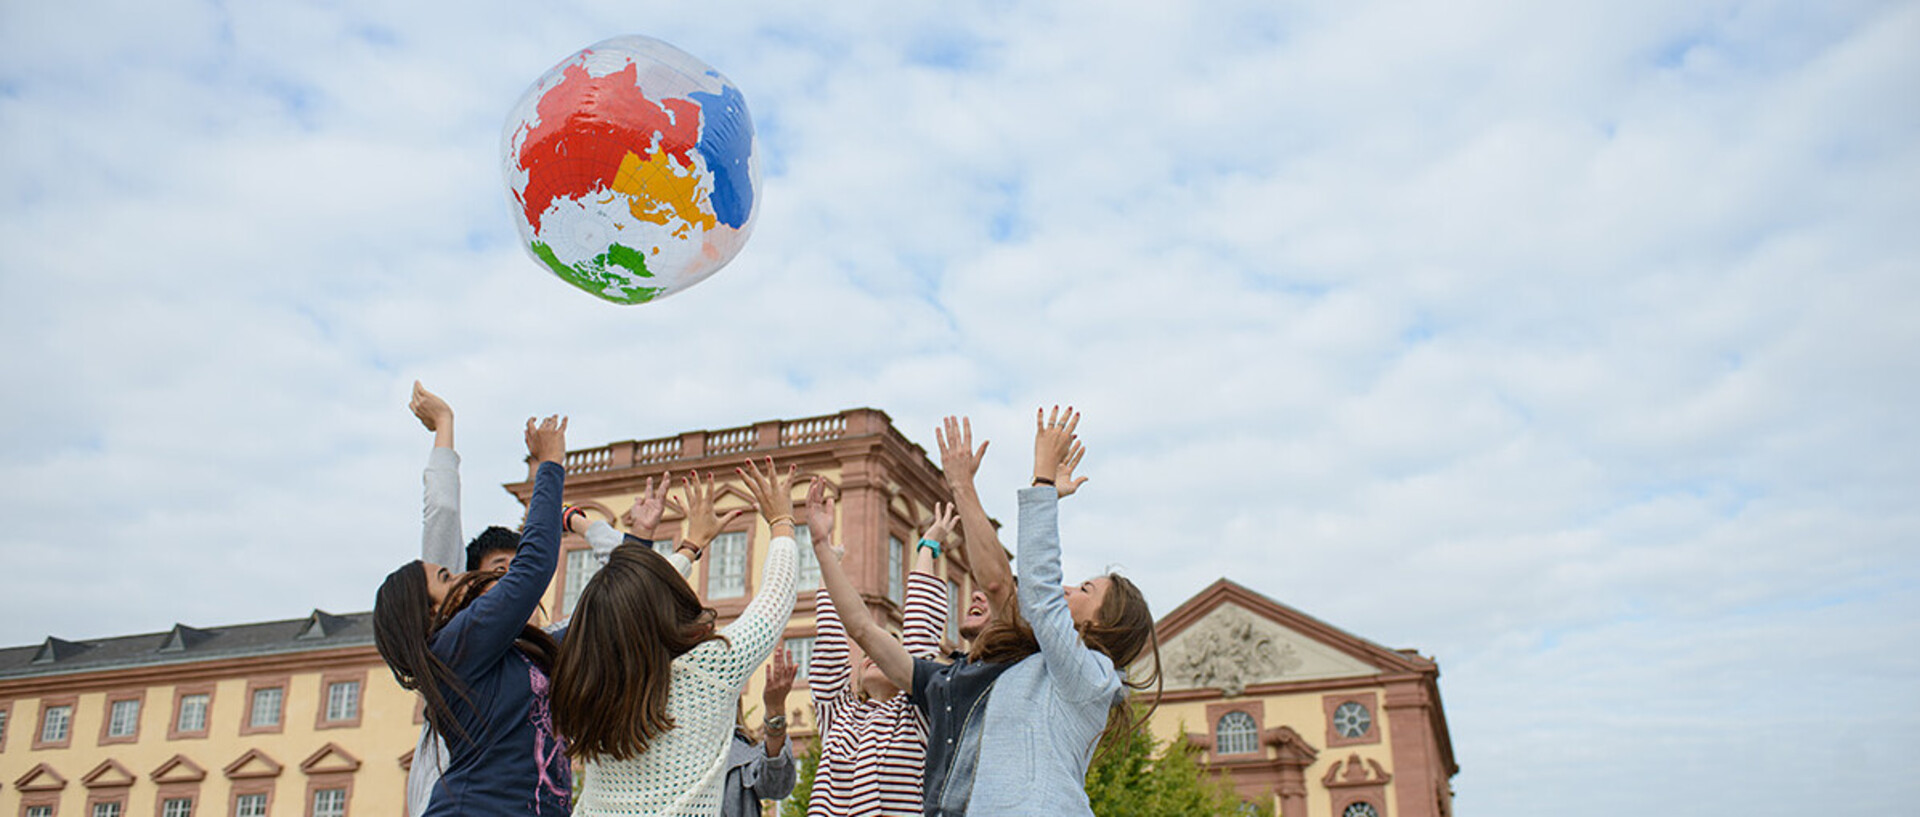 Eine Gruppe Studierender wirft einen aufgeblasenen Globus in die Luft. Dahinter ist das Schloss zu sehen.